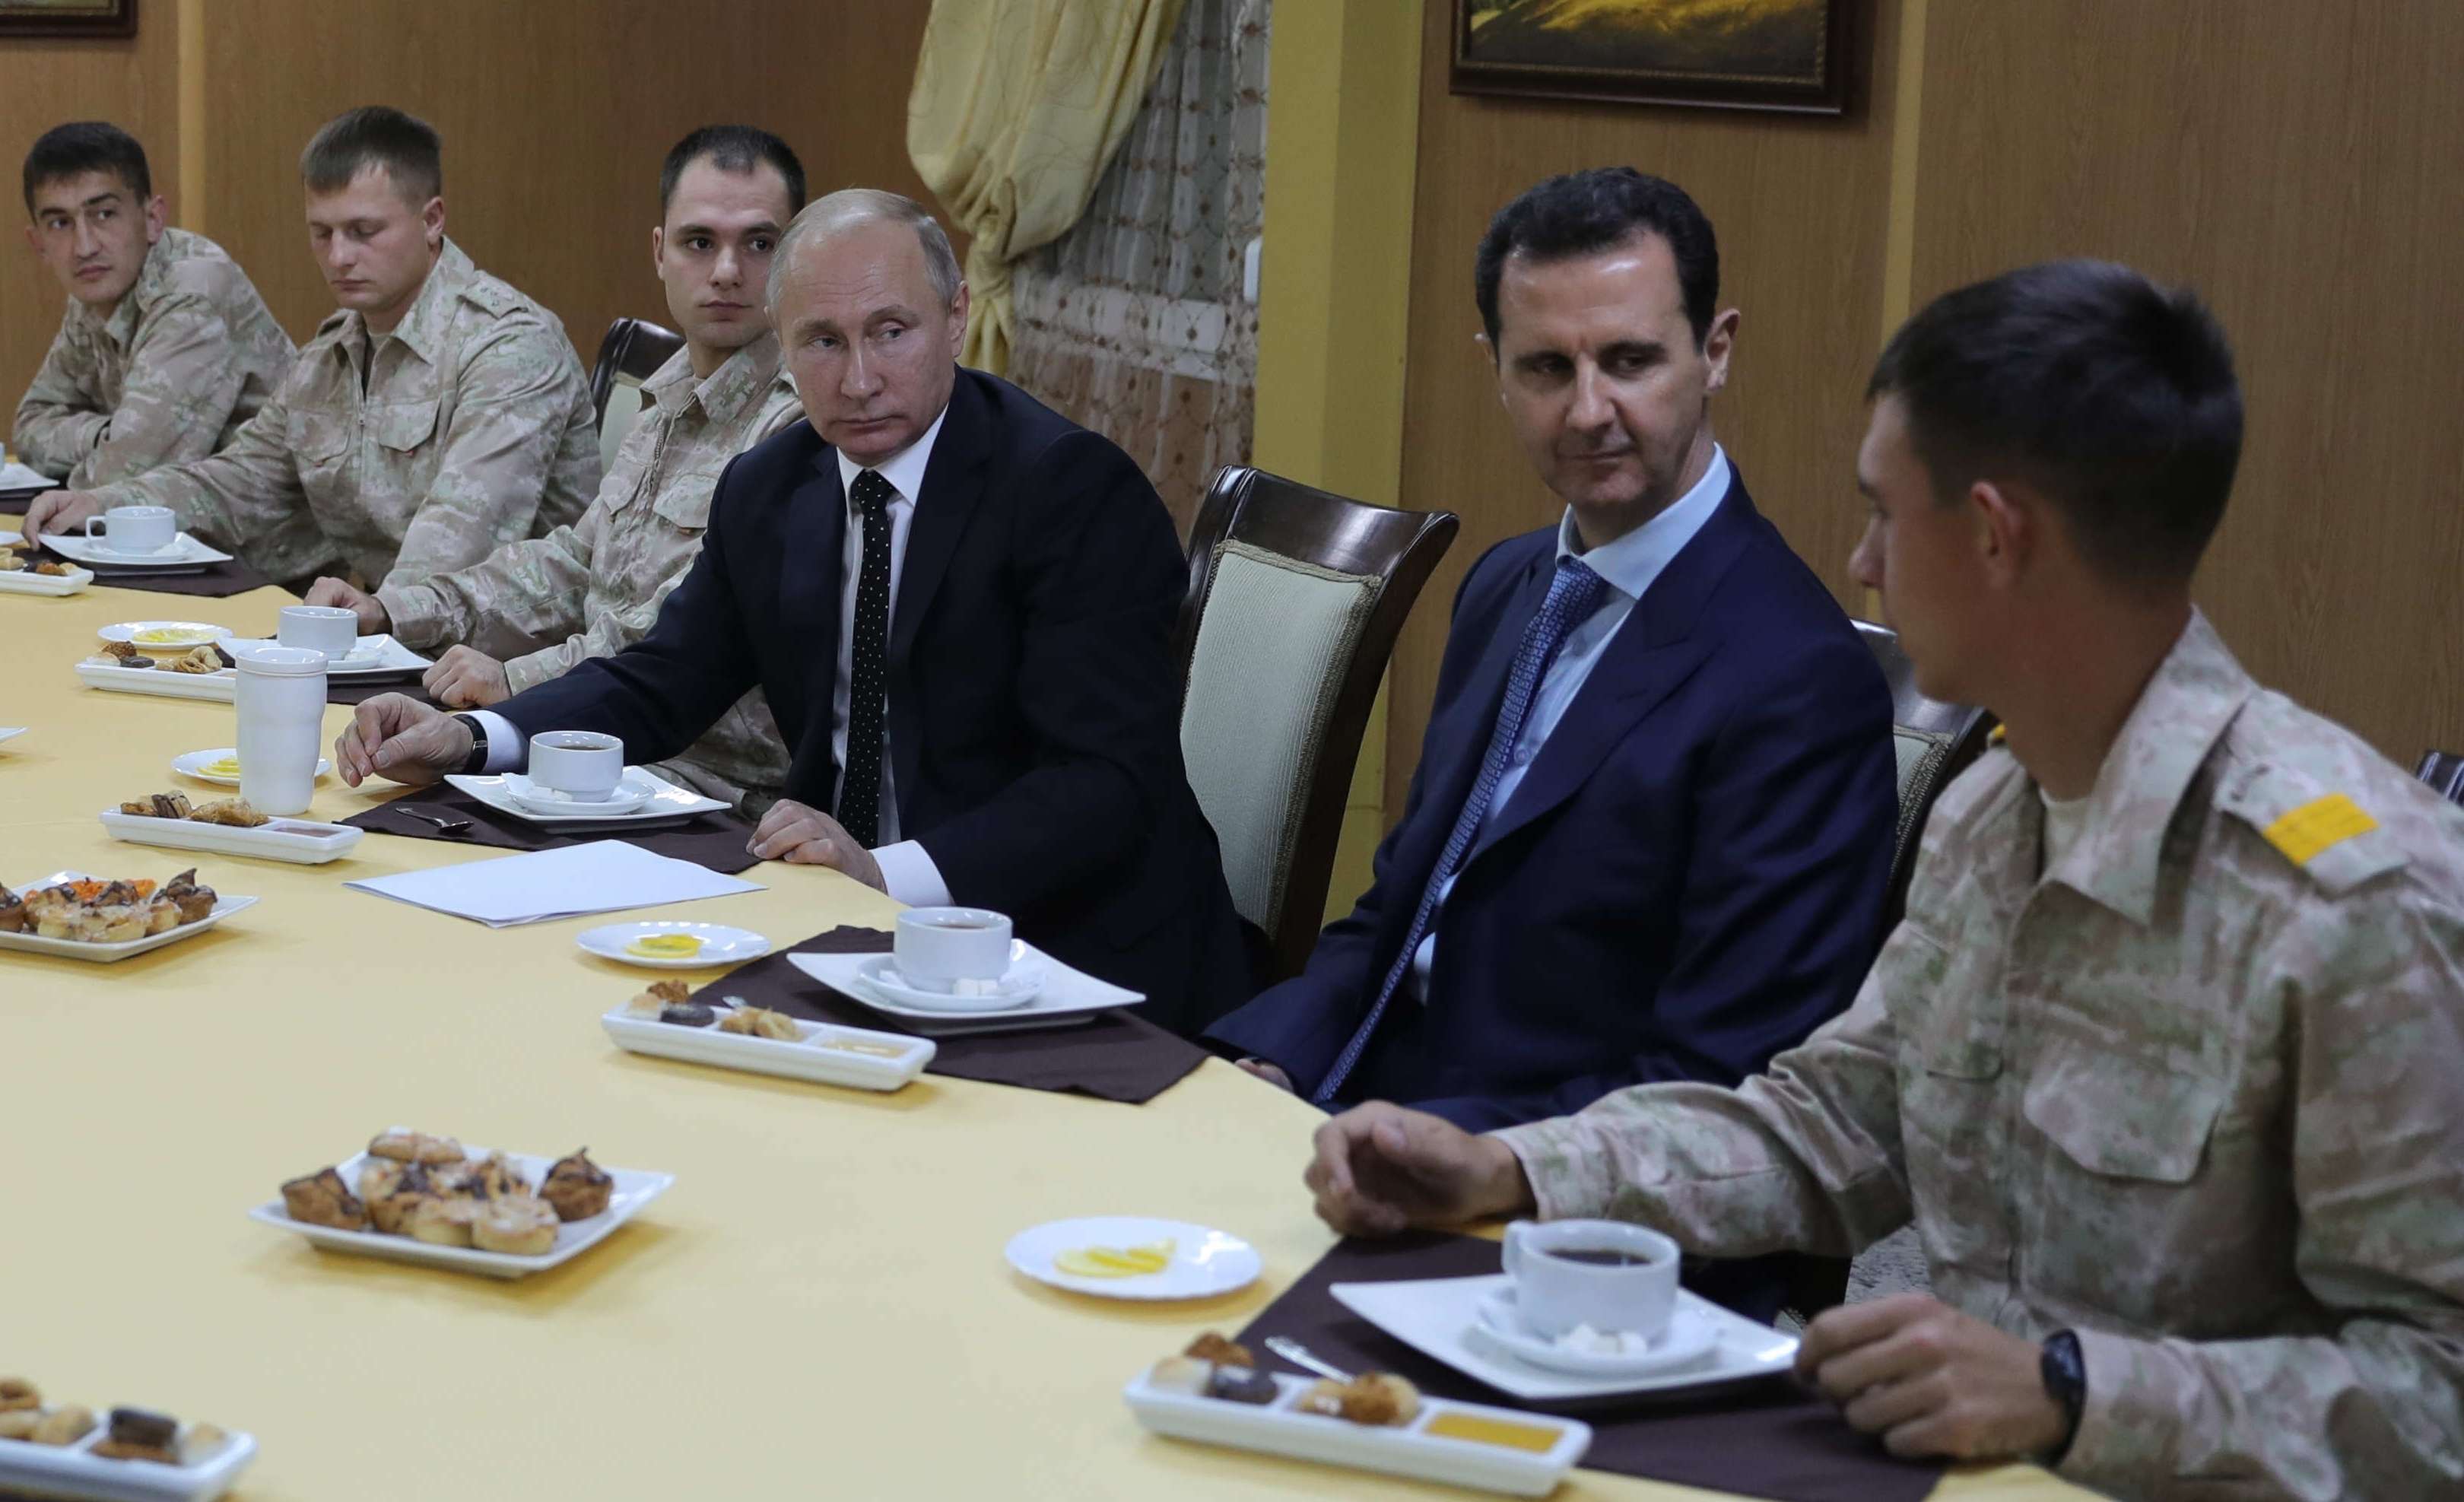 الأسد كافأ بوتين على دعمه باتفاقيات عسكرية تبقي القوات الروسية في سوريا إلى أجل غير مسمى